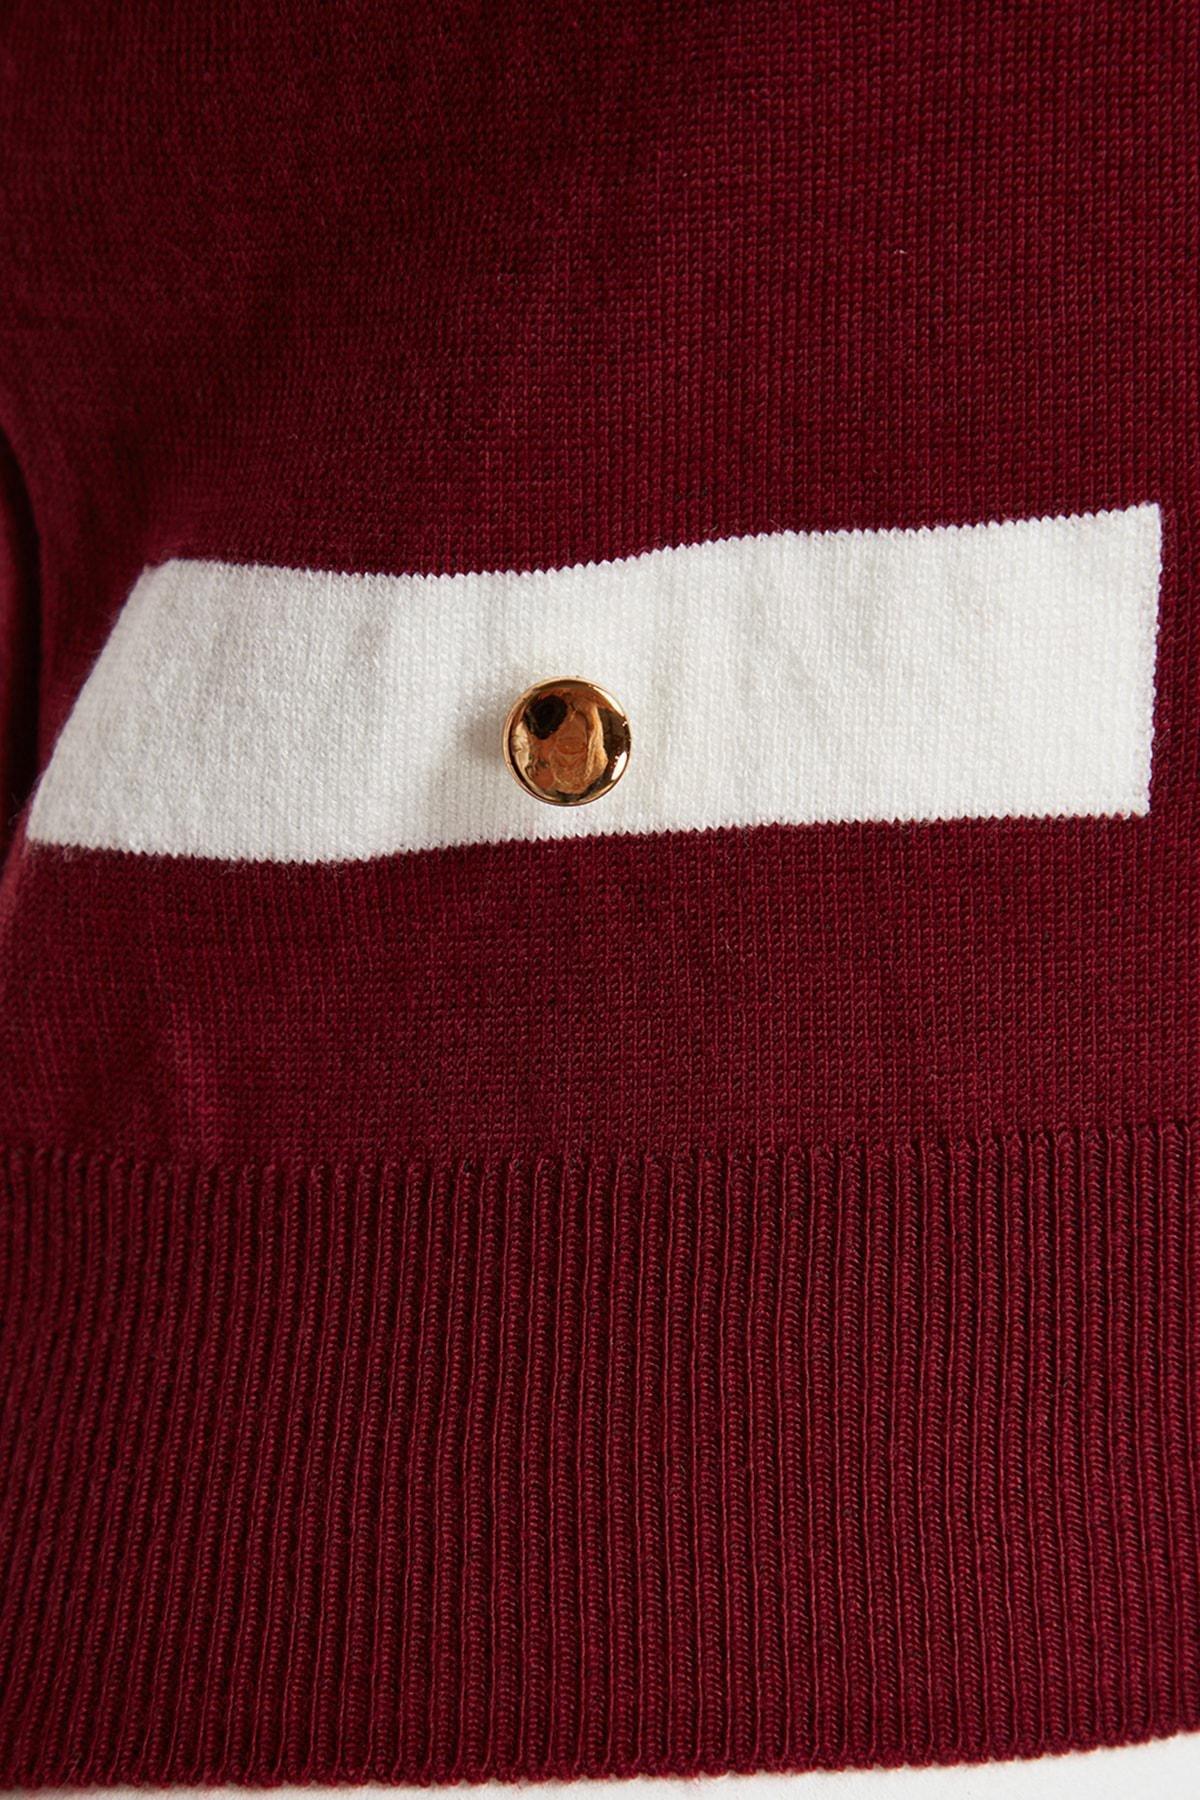 Trendyol - Red Crop One-Shoulder Knitwear Sweater